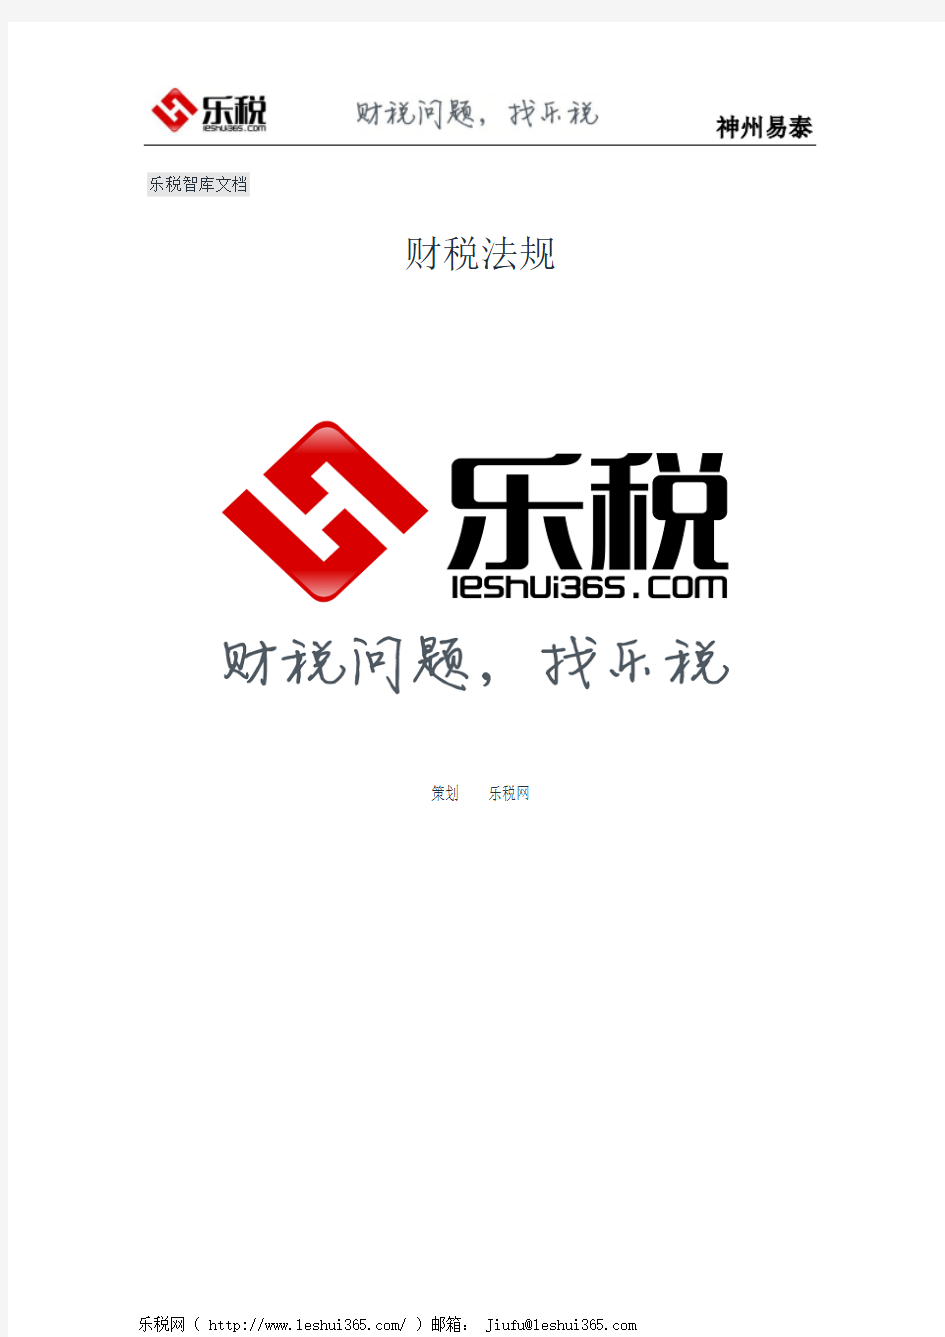 北京市地方税务局关于在税务检查工作中废止和停止执行有关文件的通知